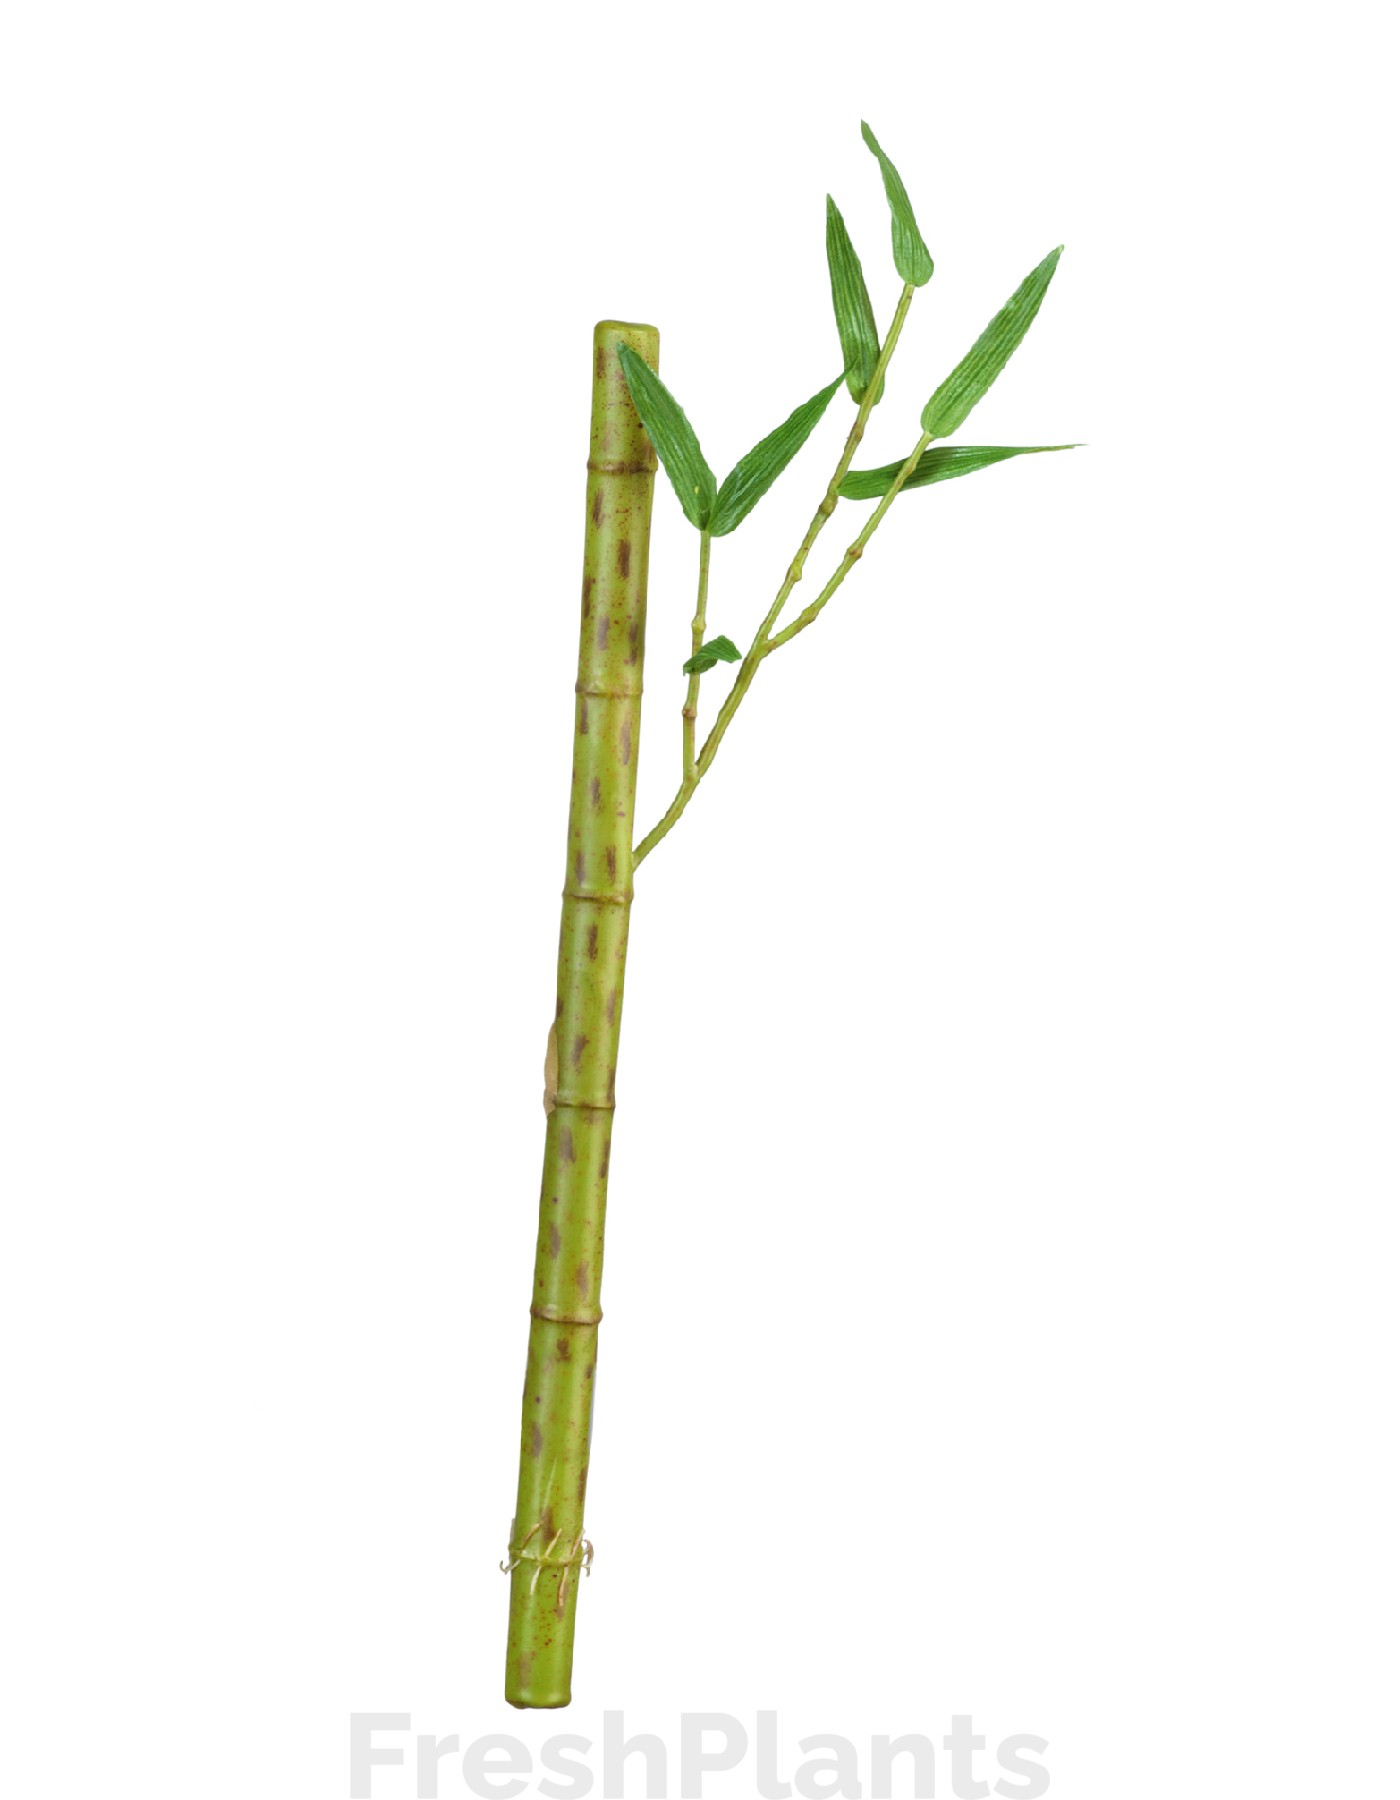 Бамбук стебель длинный св.зелёный с веточкой искусственный 30.0611073LG